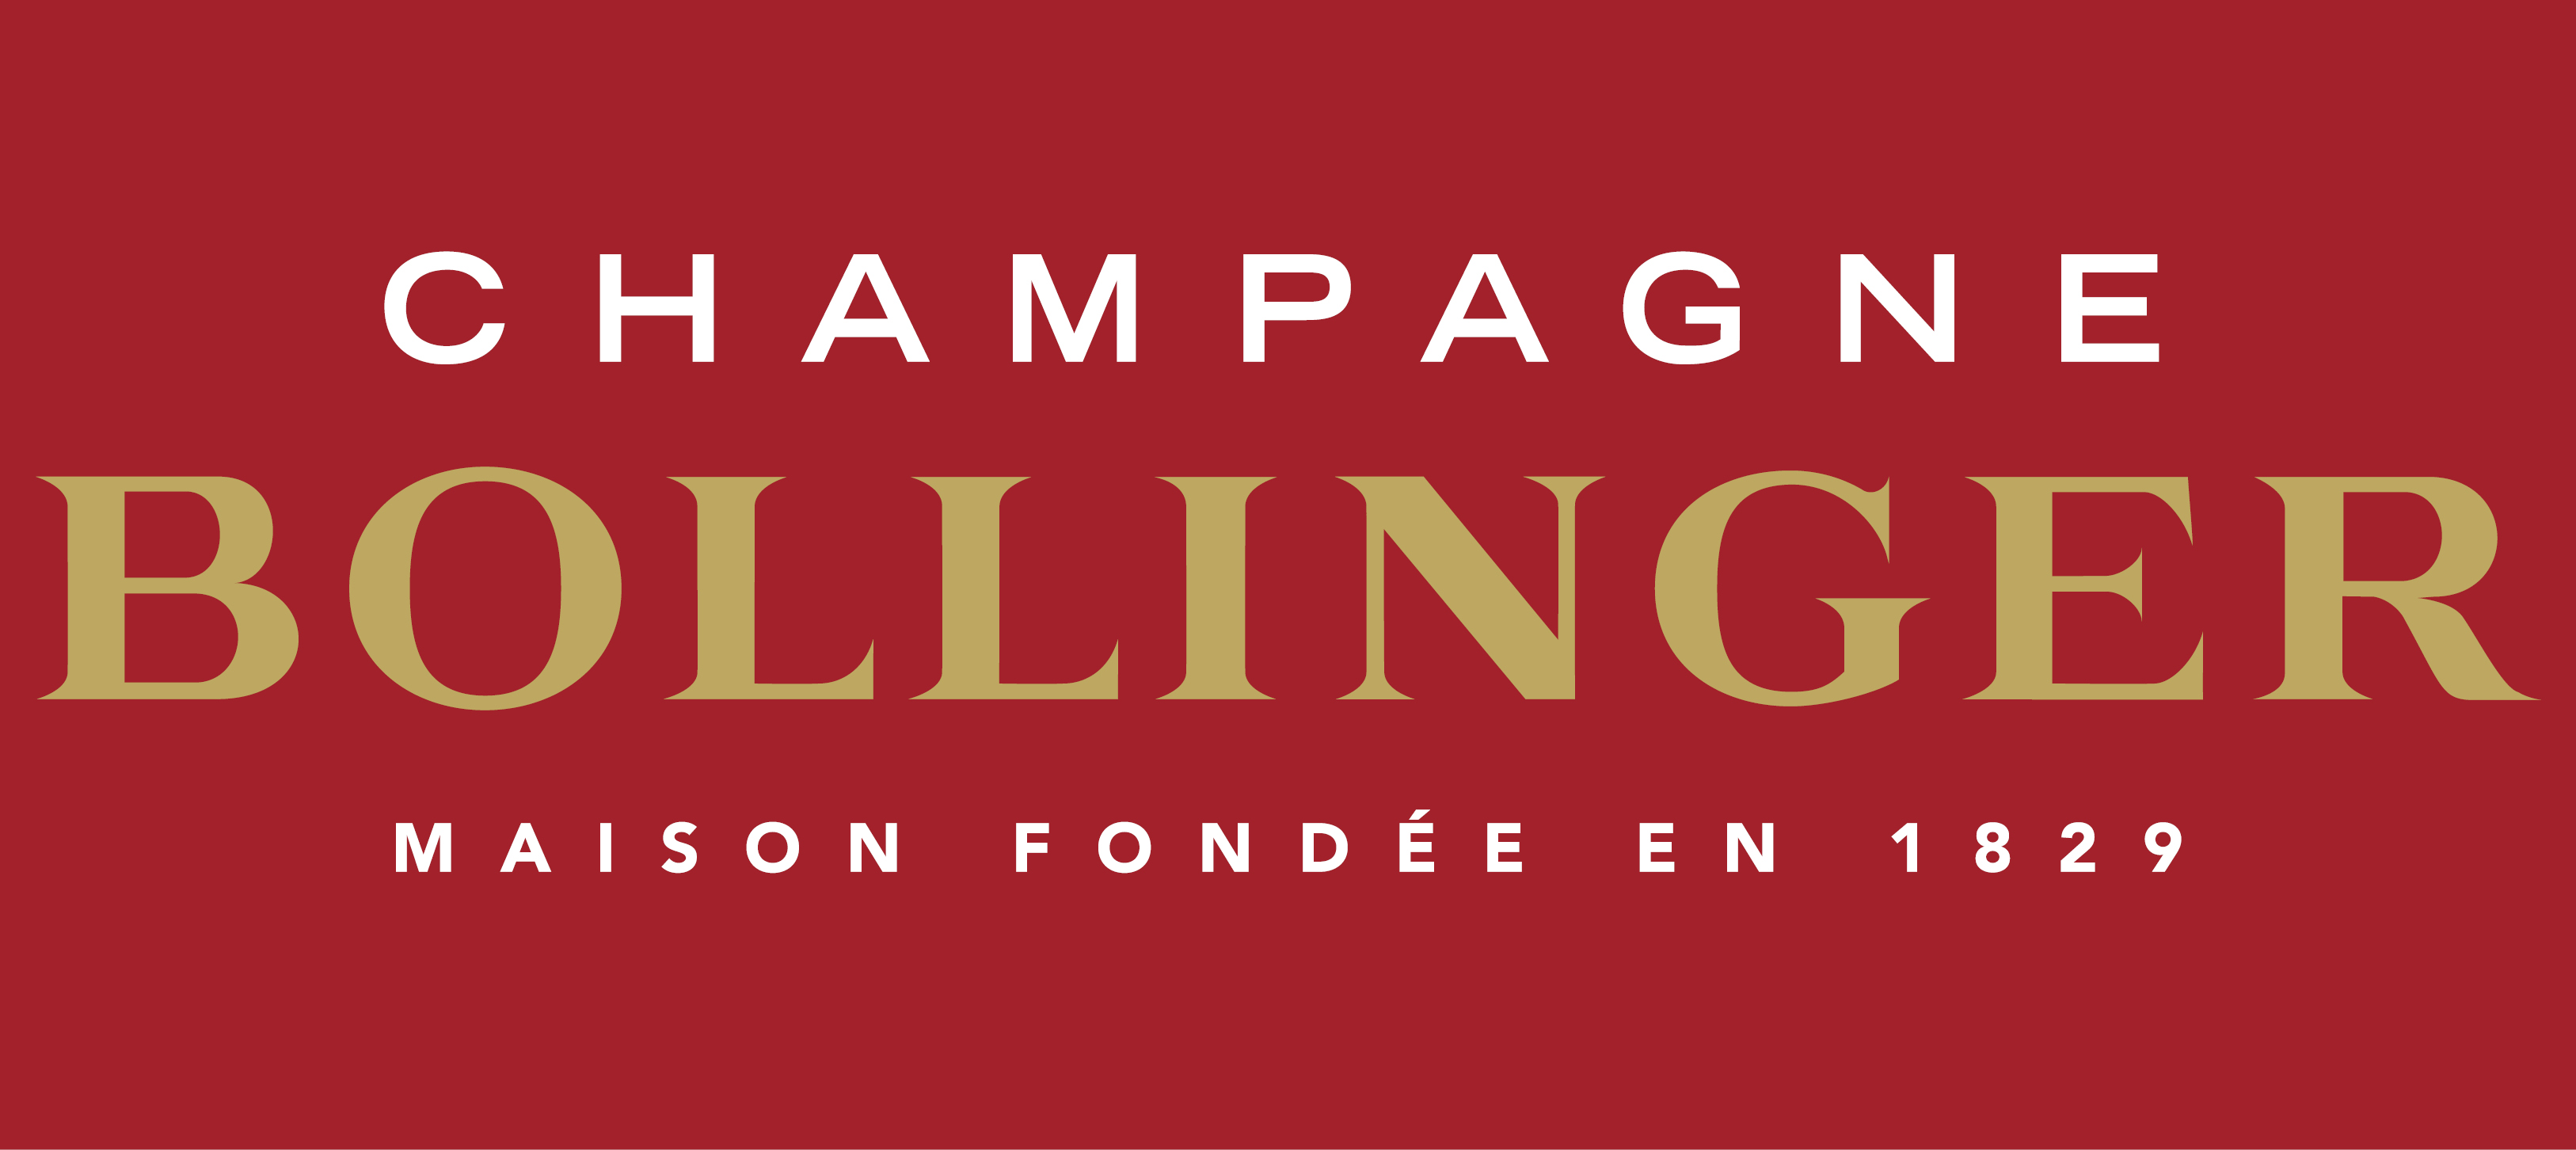 Bollinger Champagne